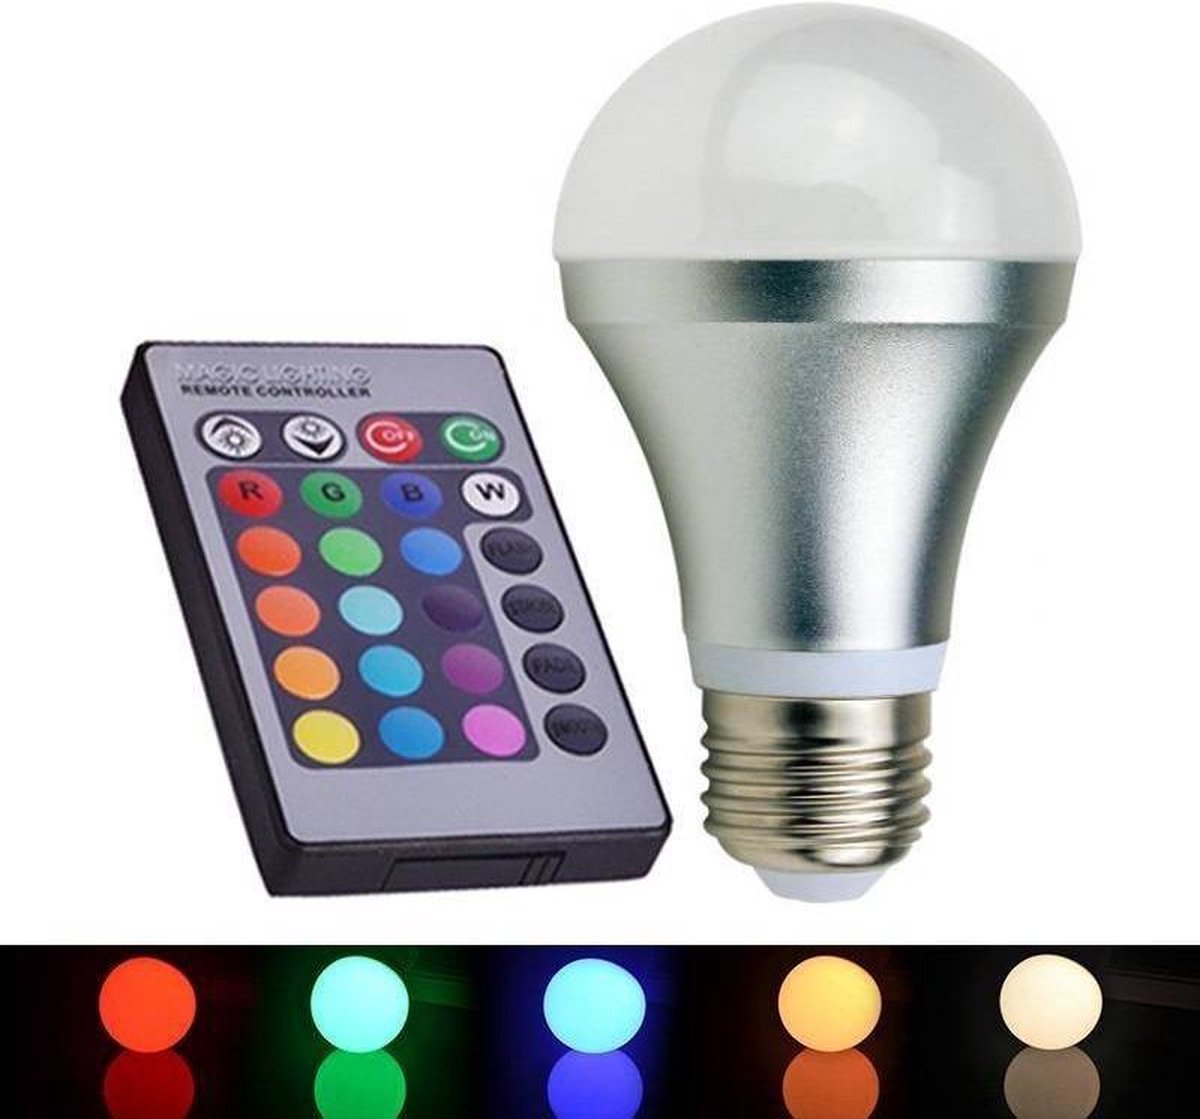 Lampe LED RGB avec Télécommande - Borosino - ABC